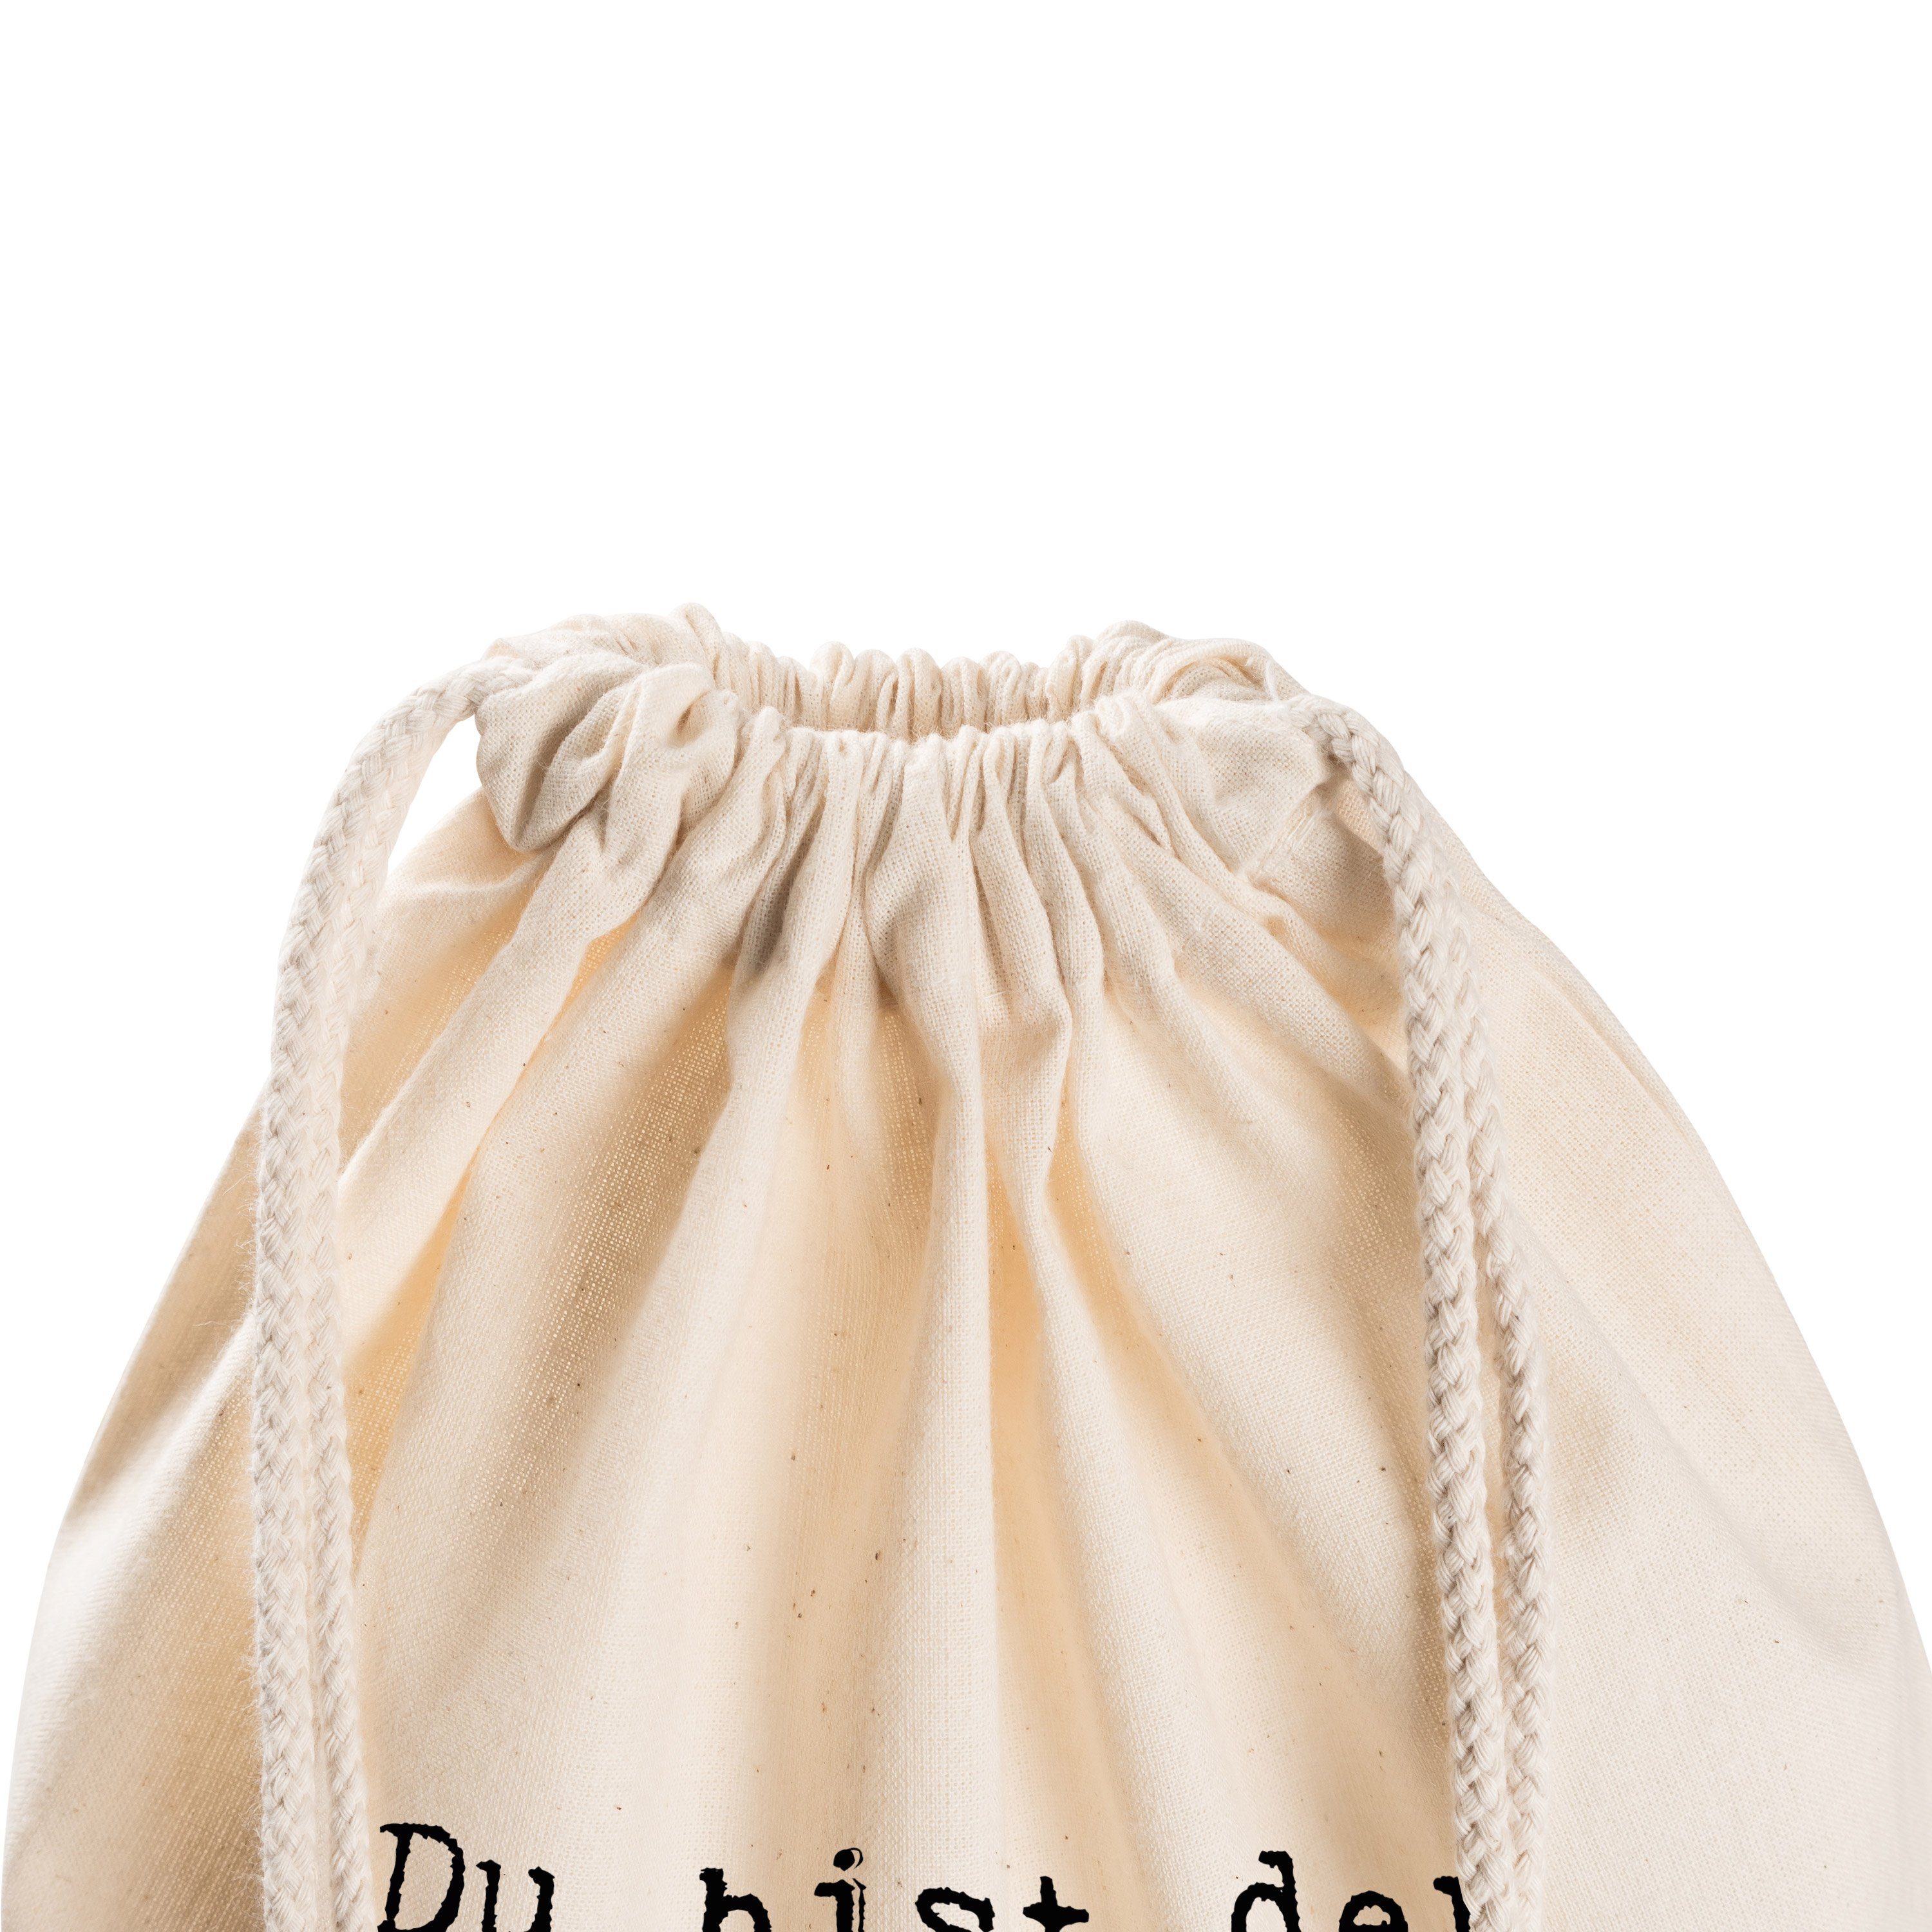 & Transparent Sporttasche Mrs. bist Beut Glitzer Spruch, Mr. Geschenk, - (1-tlg) der Du - Panda Glitzer...